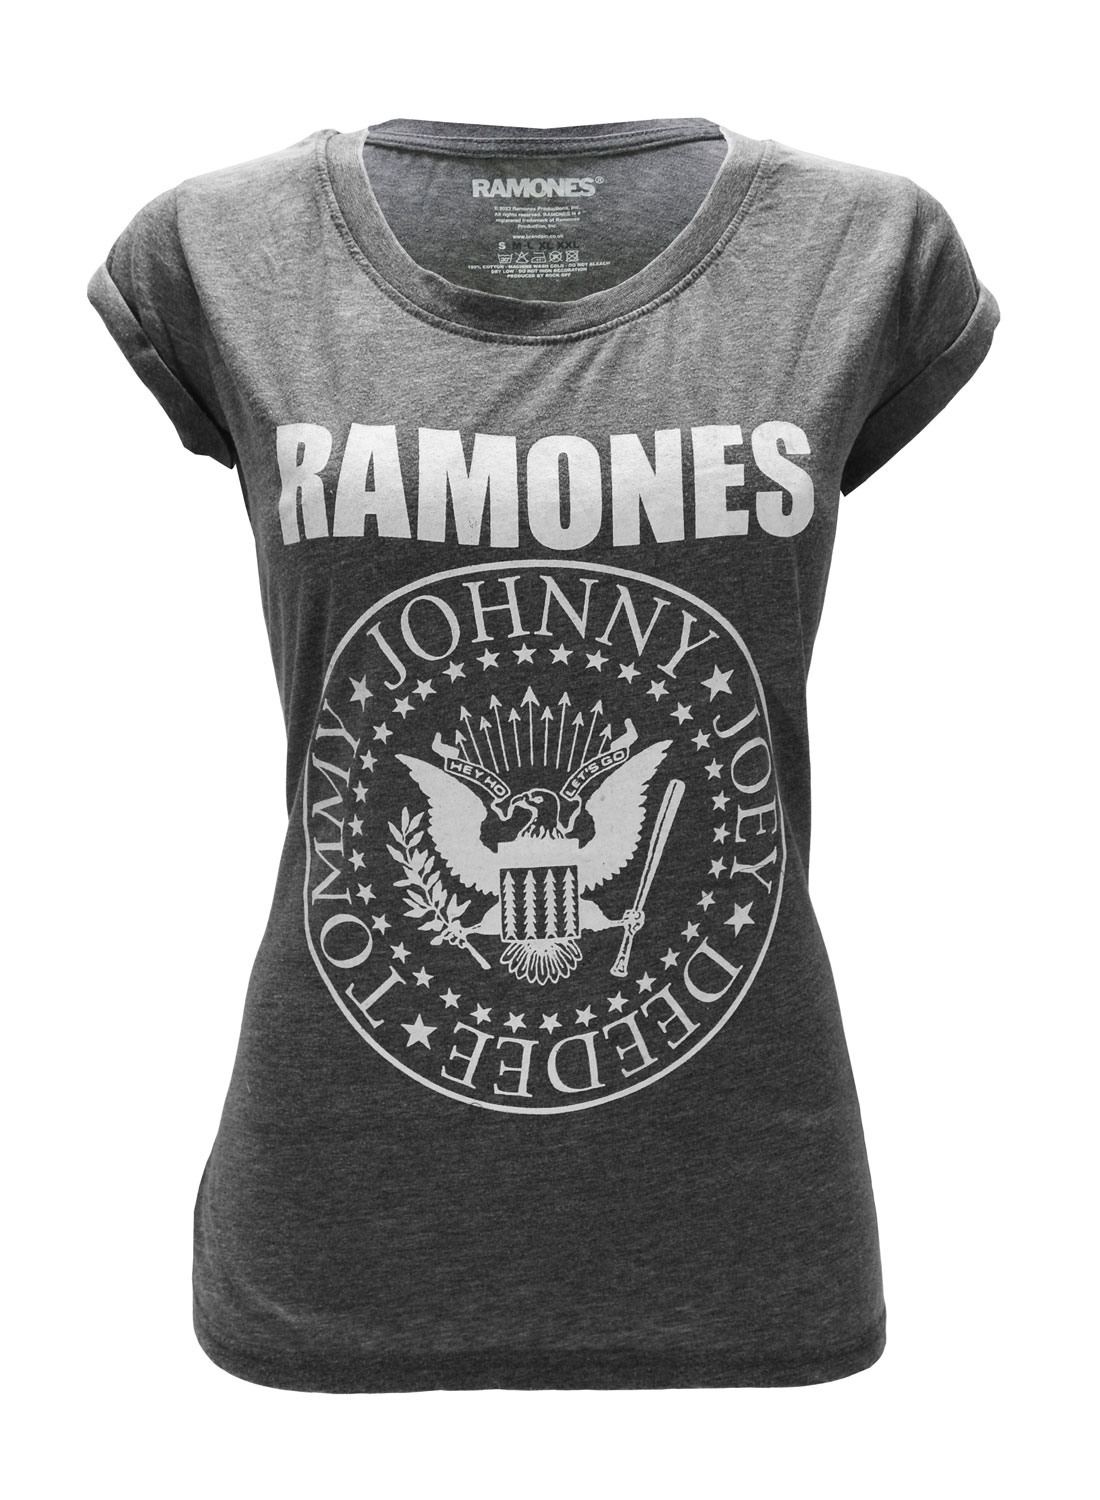 Ramones Vintage Seal Girly Top